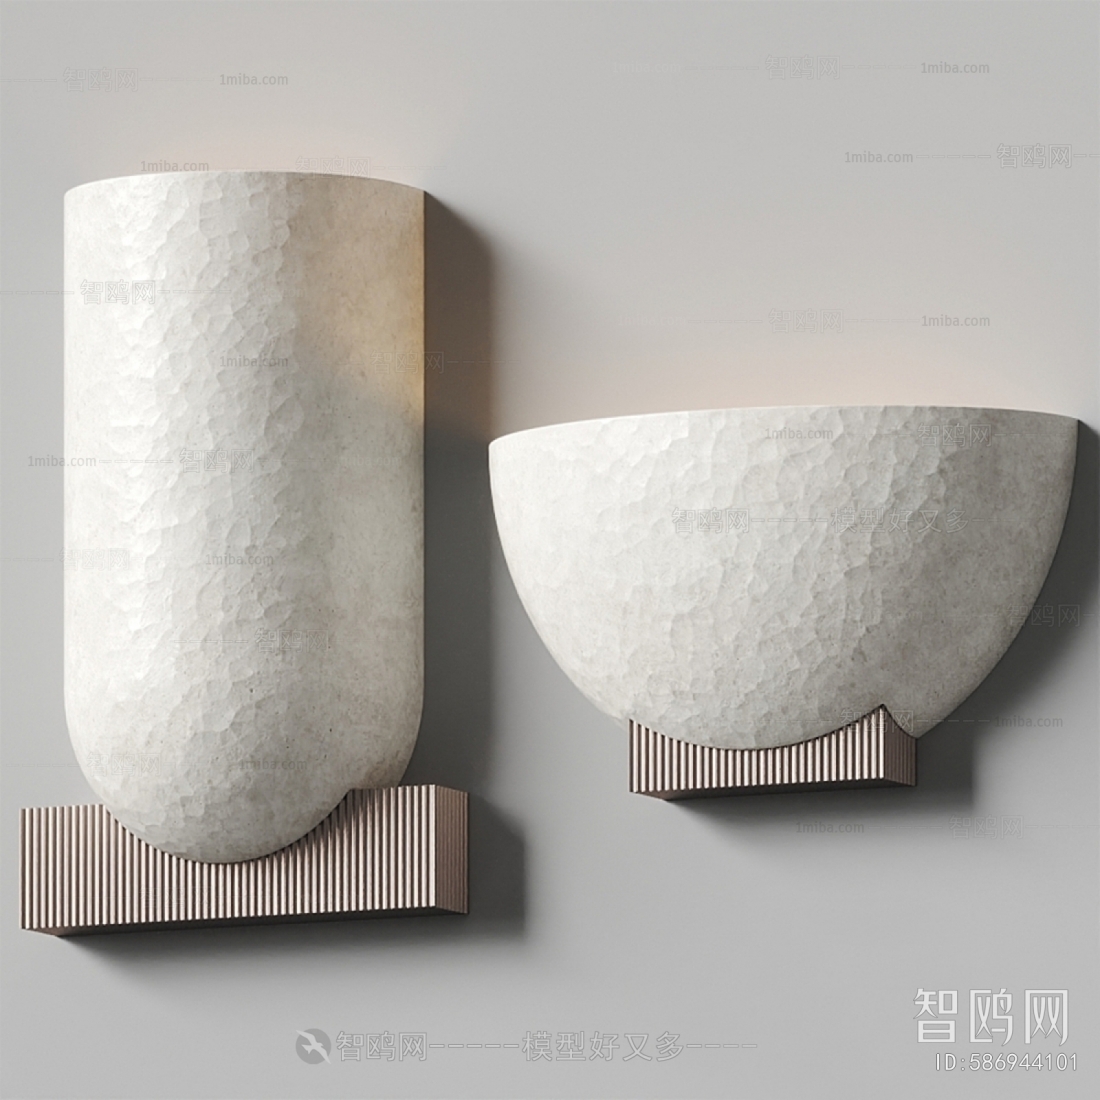 Wabi-sabi Style Wall Lamp